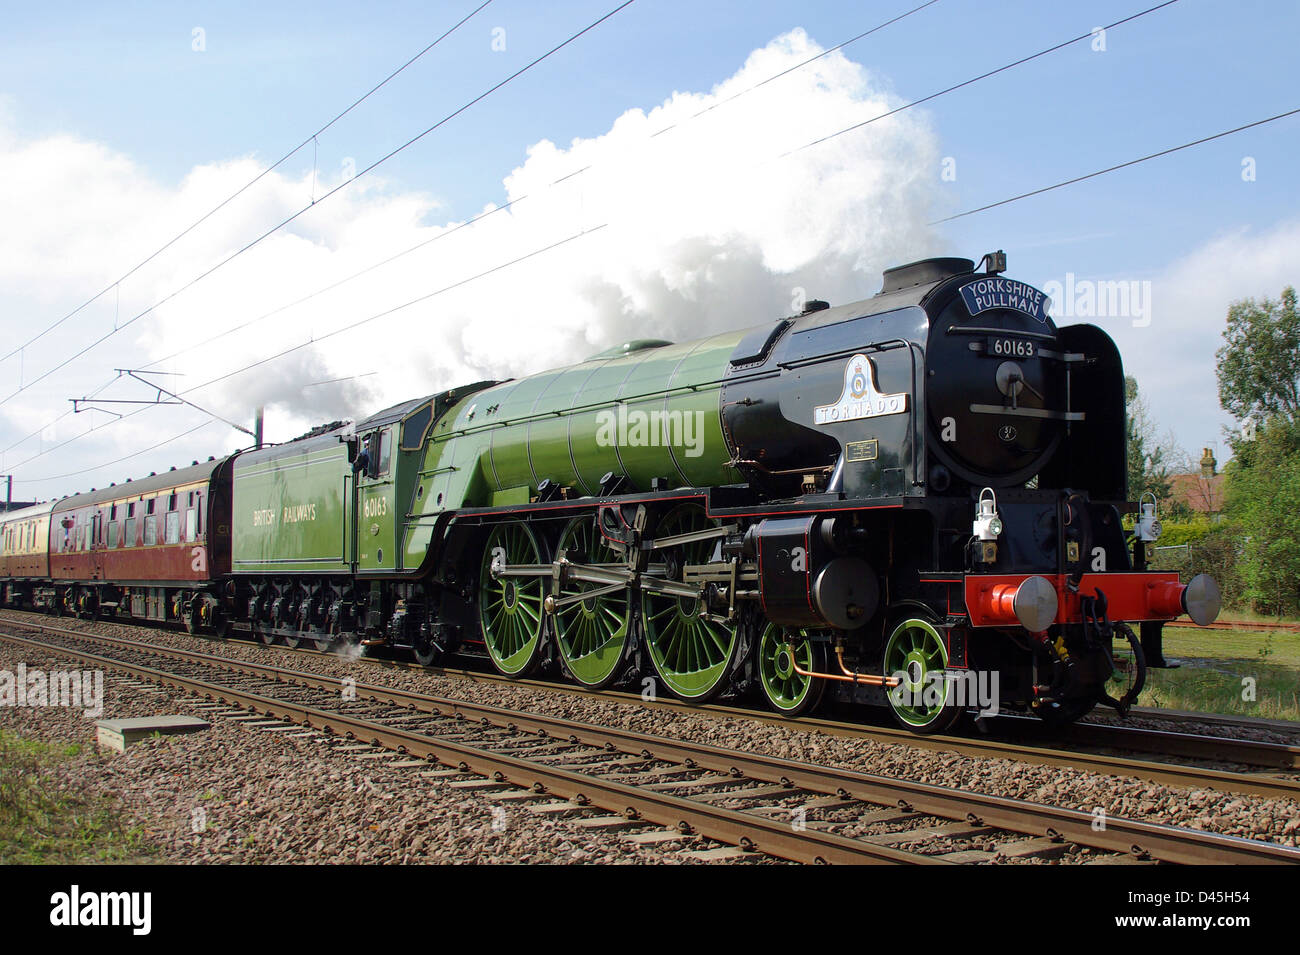 60163 treno locomotiva a vapore Tornado mainline, di nuova costruzione in Inghilterra. Completato nel 2008, spesso funziona su binari principali del Regno Unito. Trasporto speciale Foto Stock